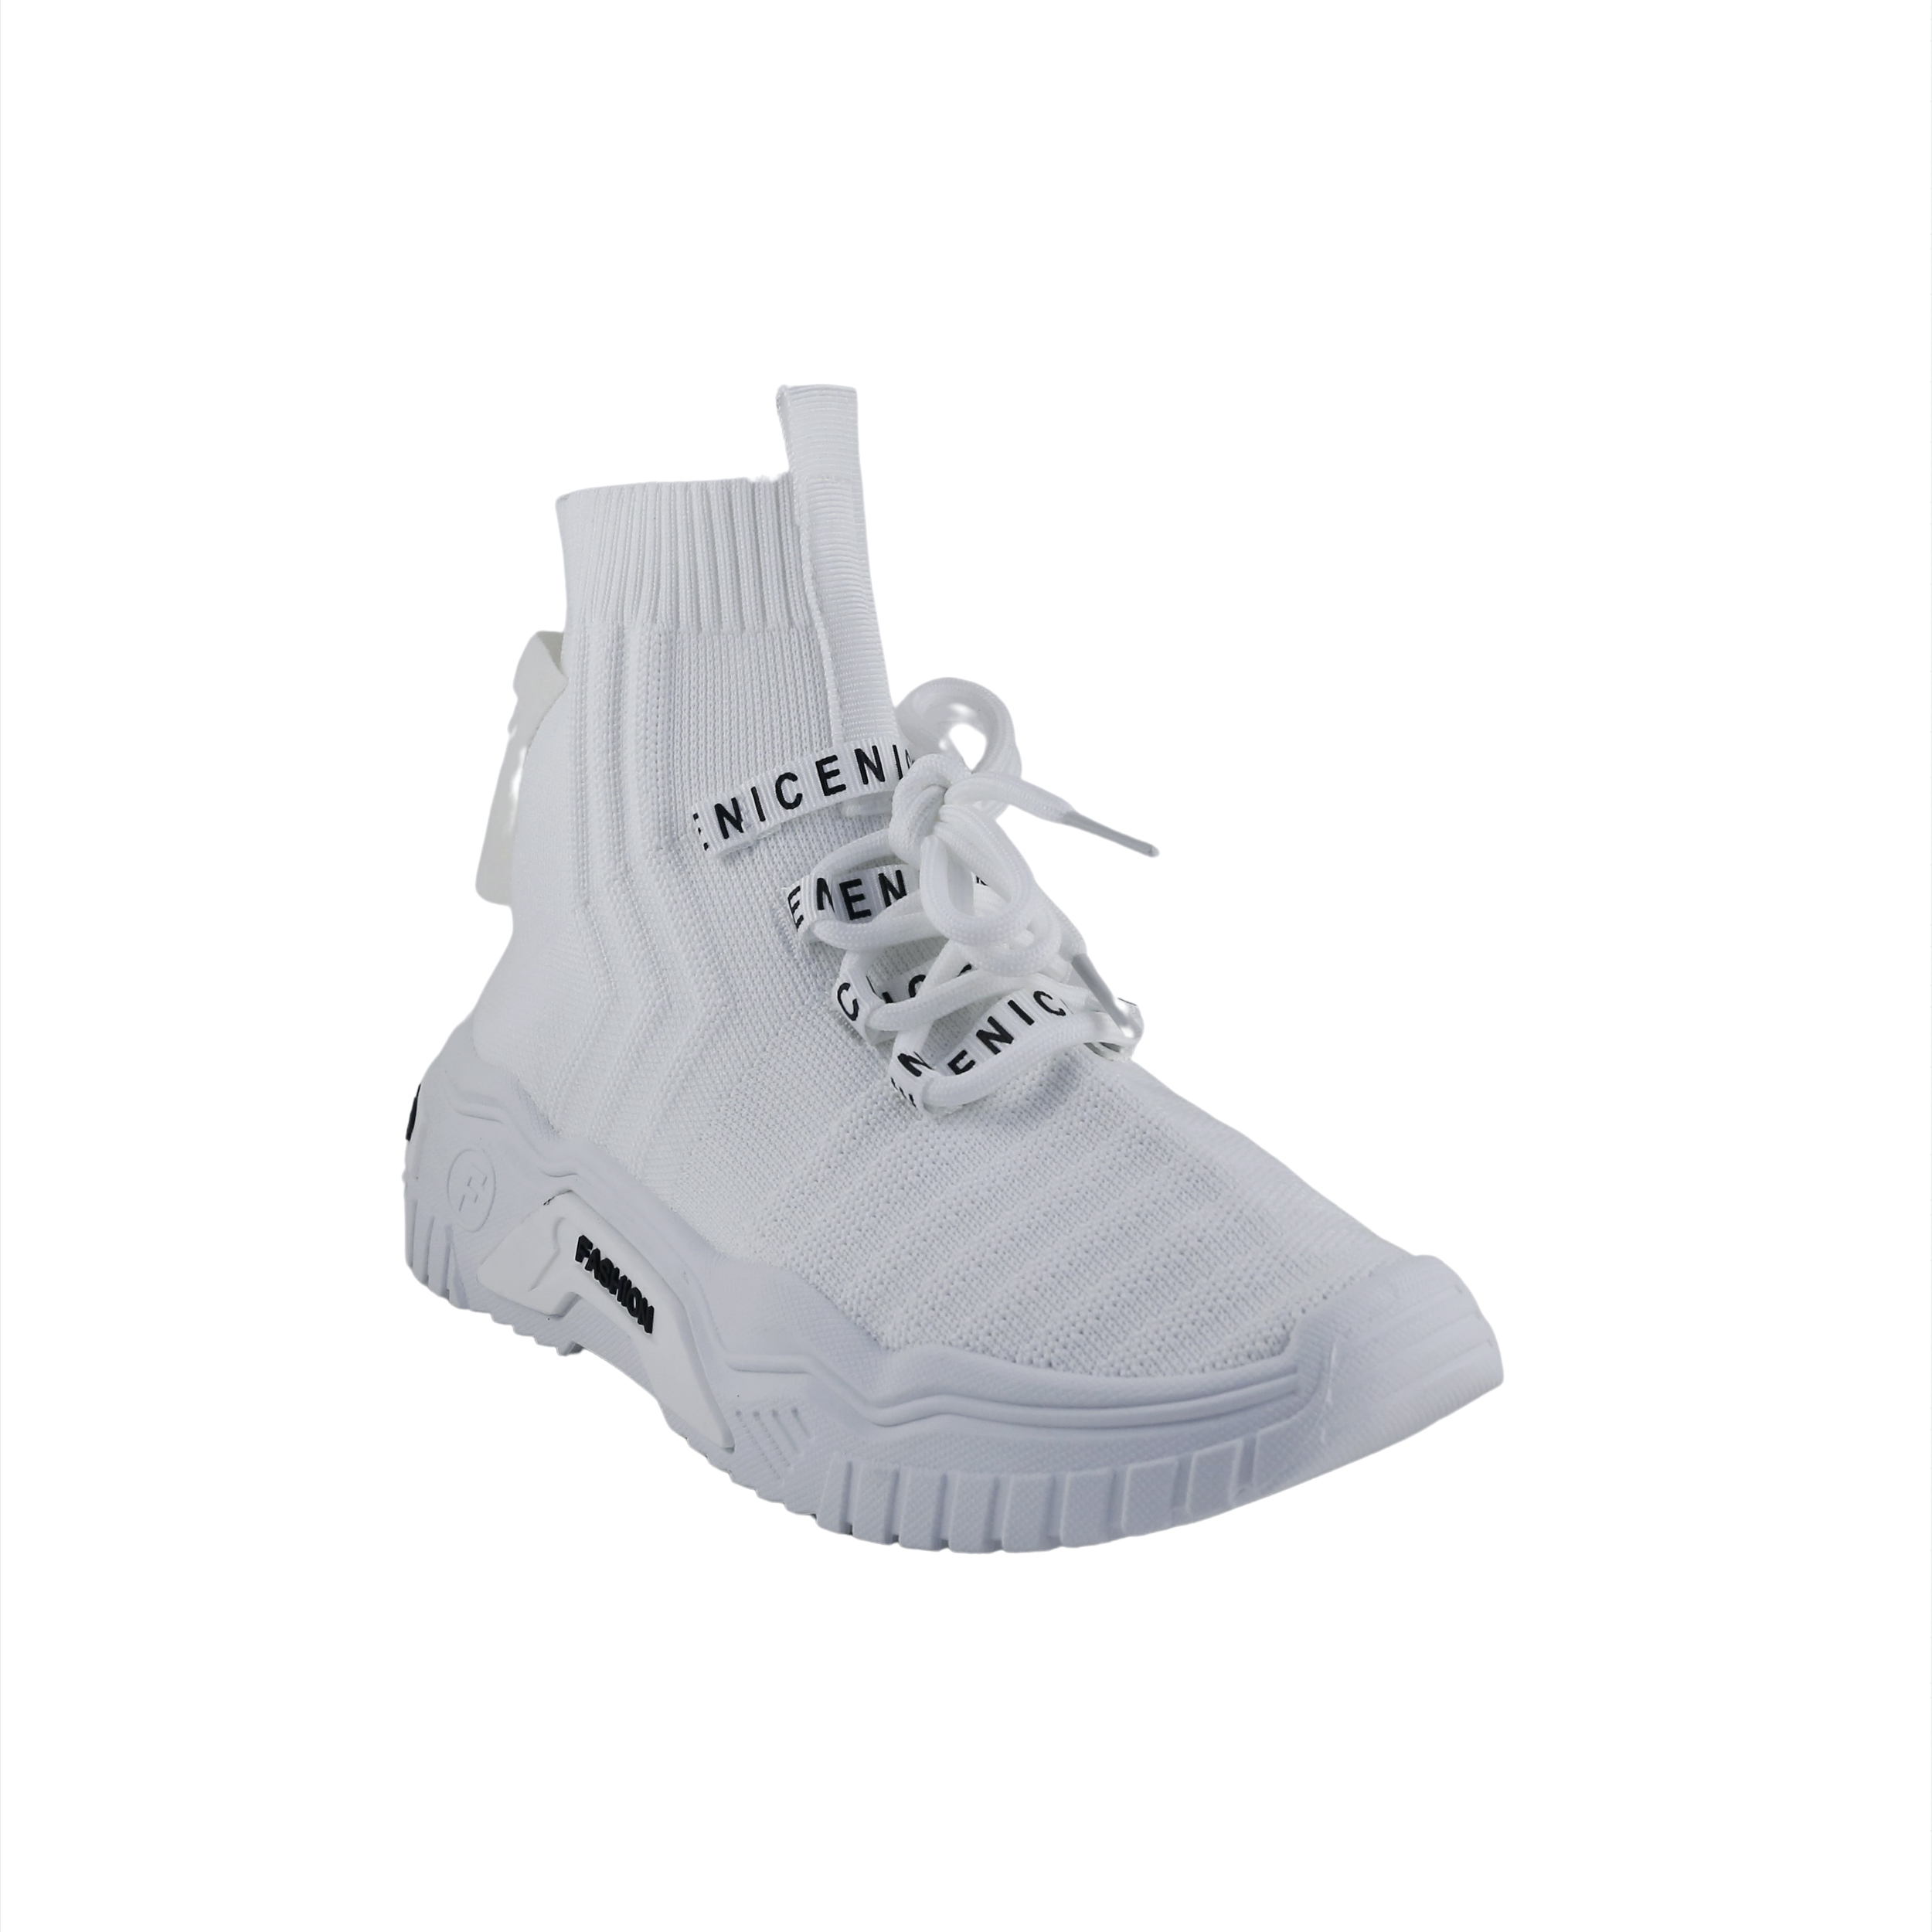 Γυναίκα Παπούτσια Casual-Sneakers Λευκά πάνινα sneakers μποτάκι